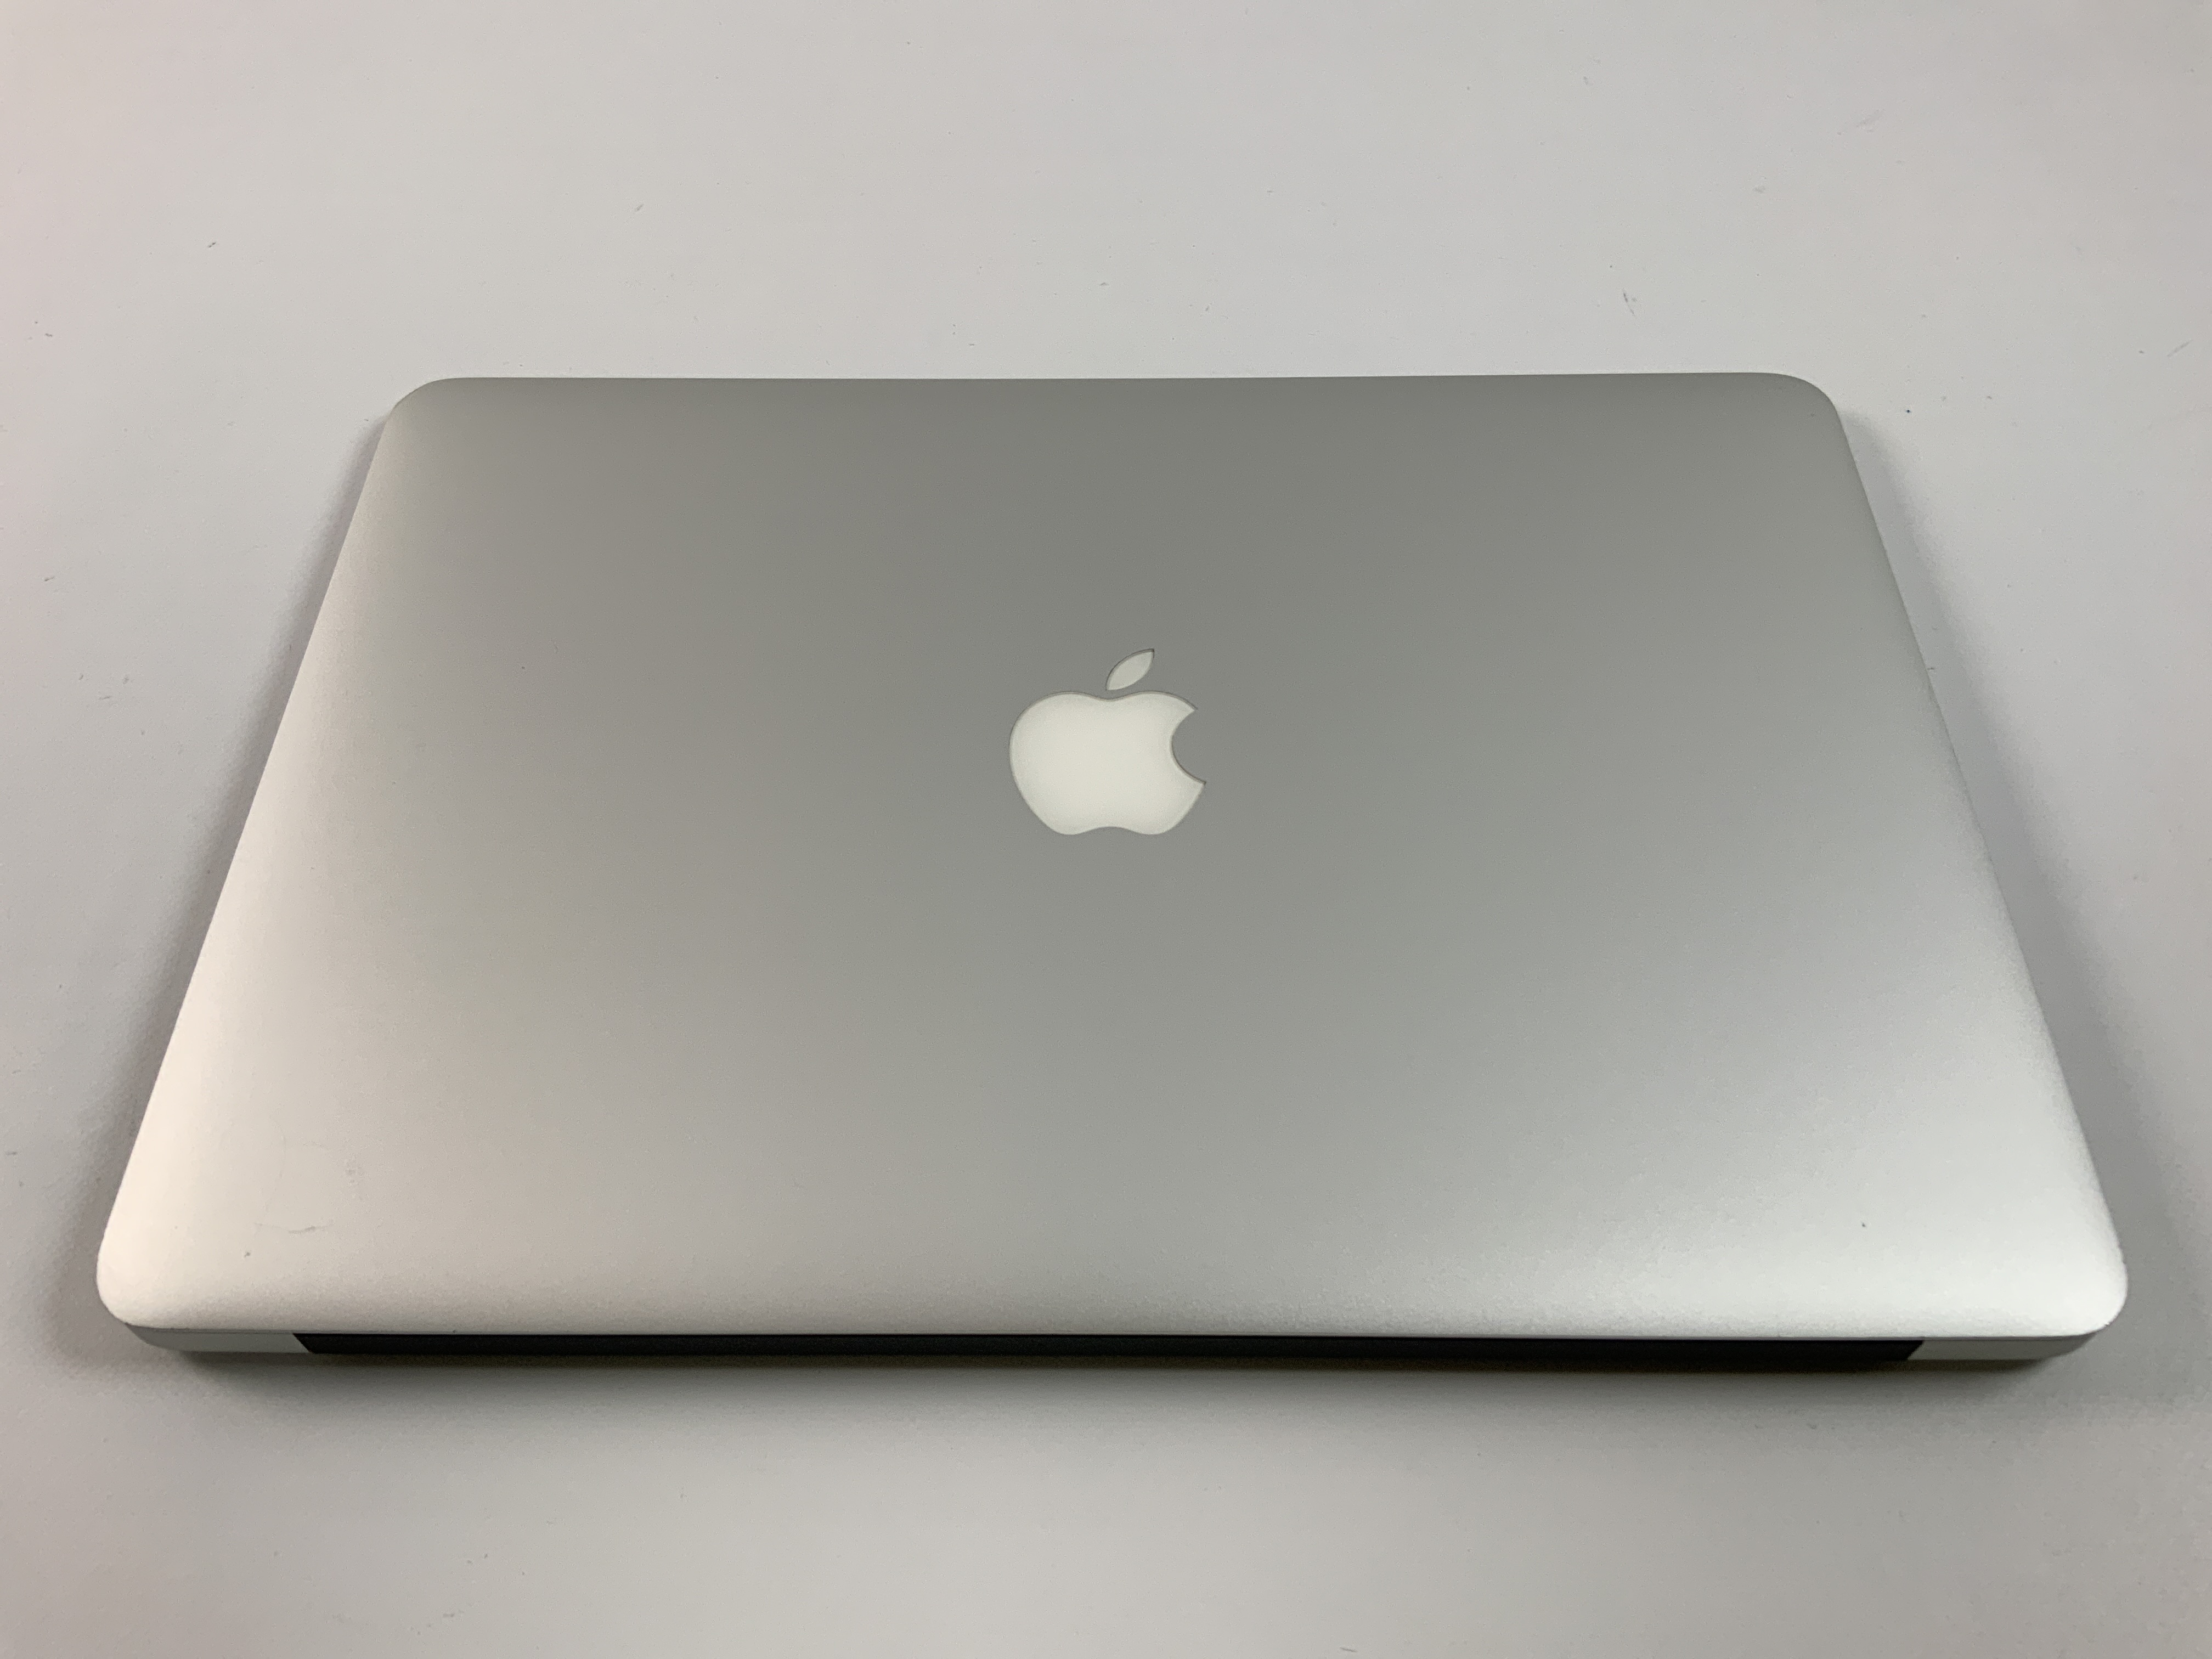 MacBook Air 13" Mid 2017 (Intel Core i5 1.8 GHz 8 GB RAM 256 GB SSD), Intel Core i5 1.8 GHz, 8 GB RAM, 256 GB SSD, imagen 2